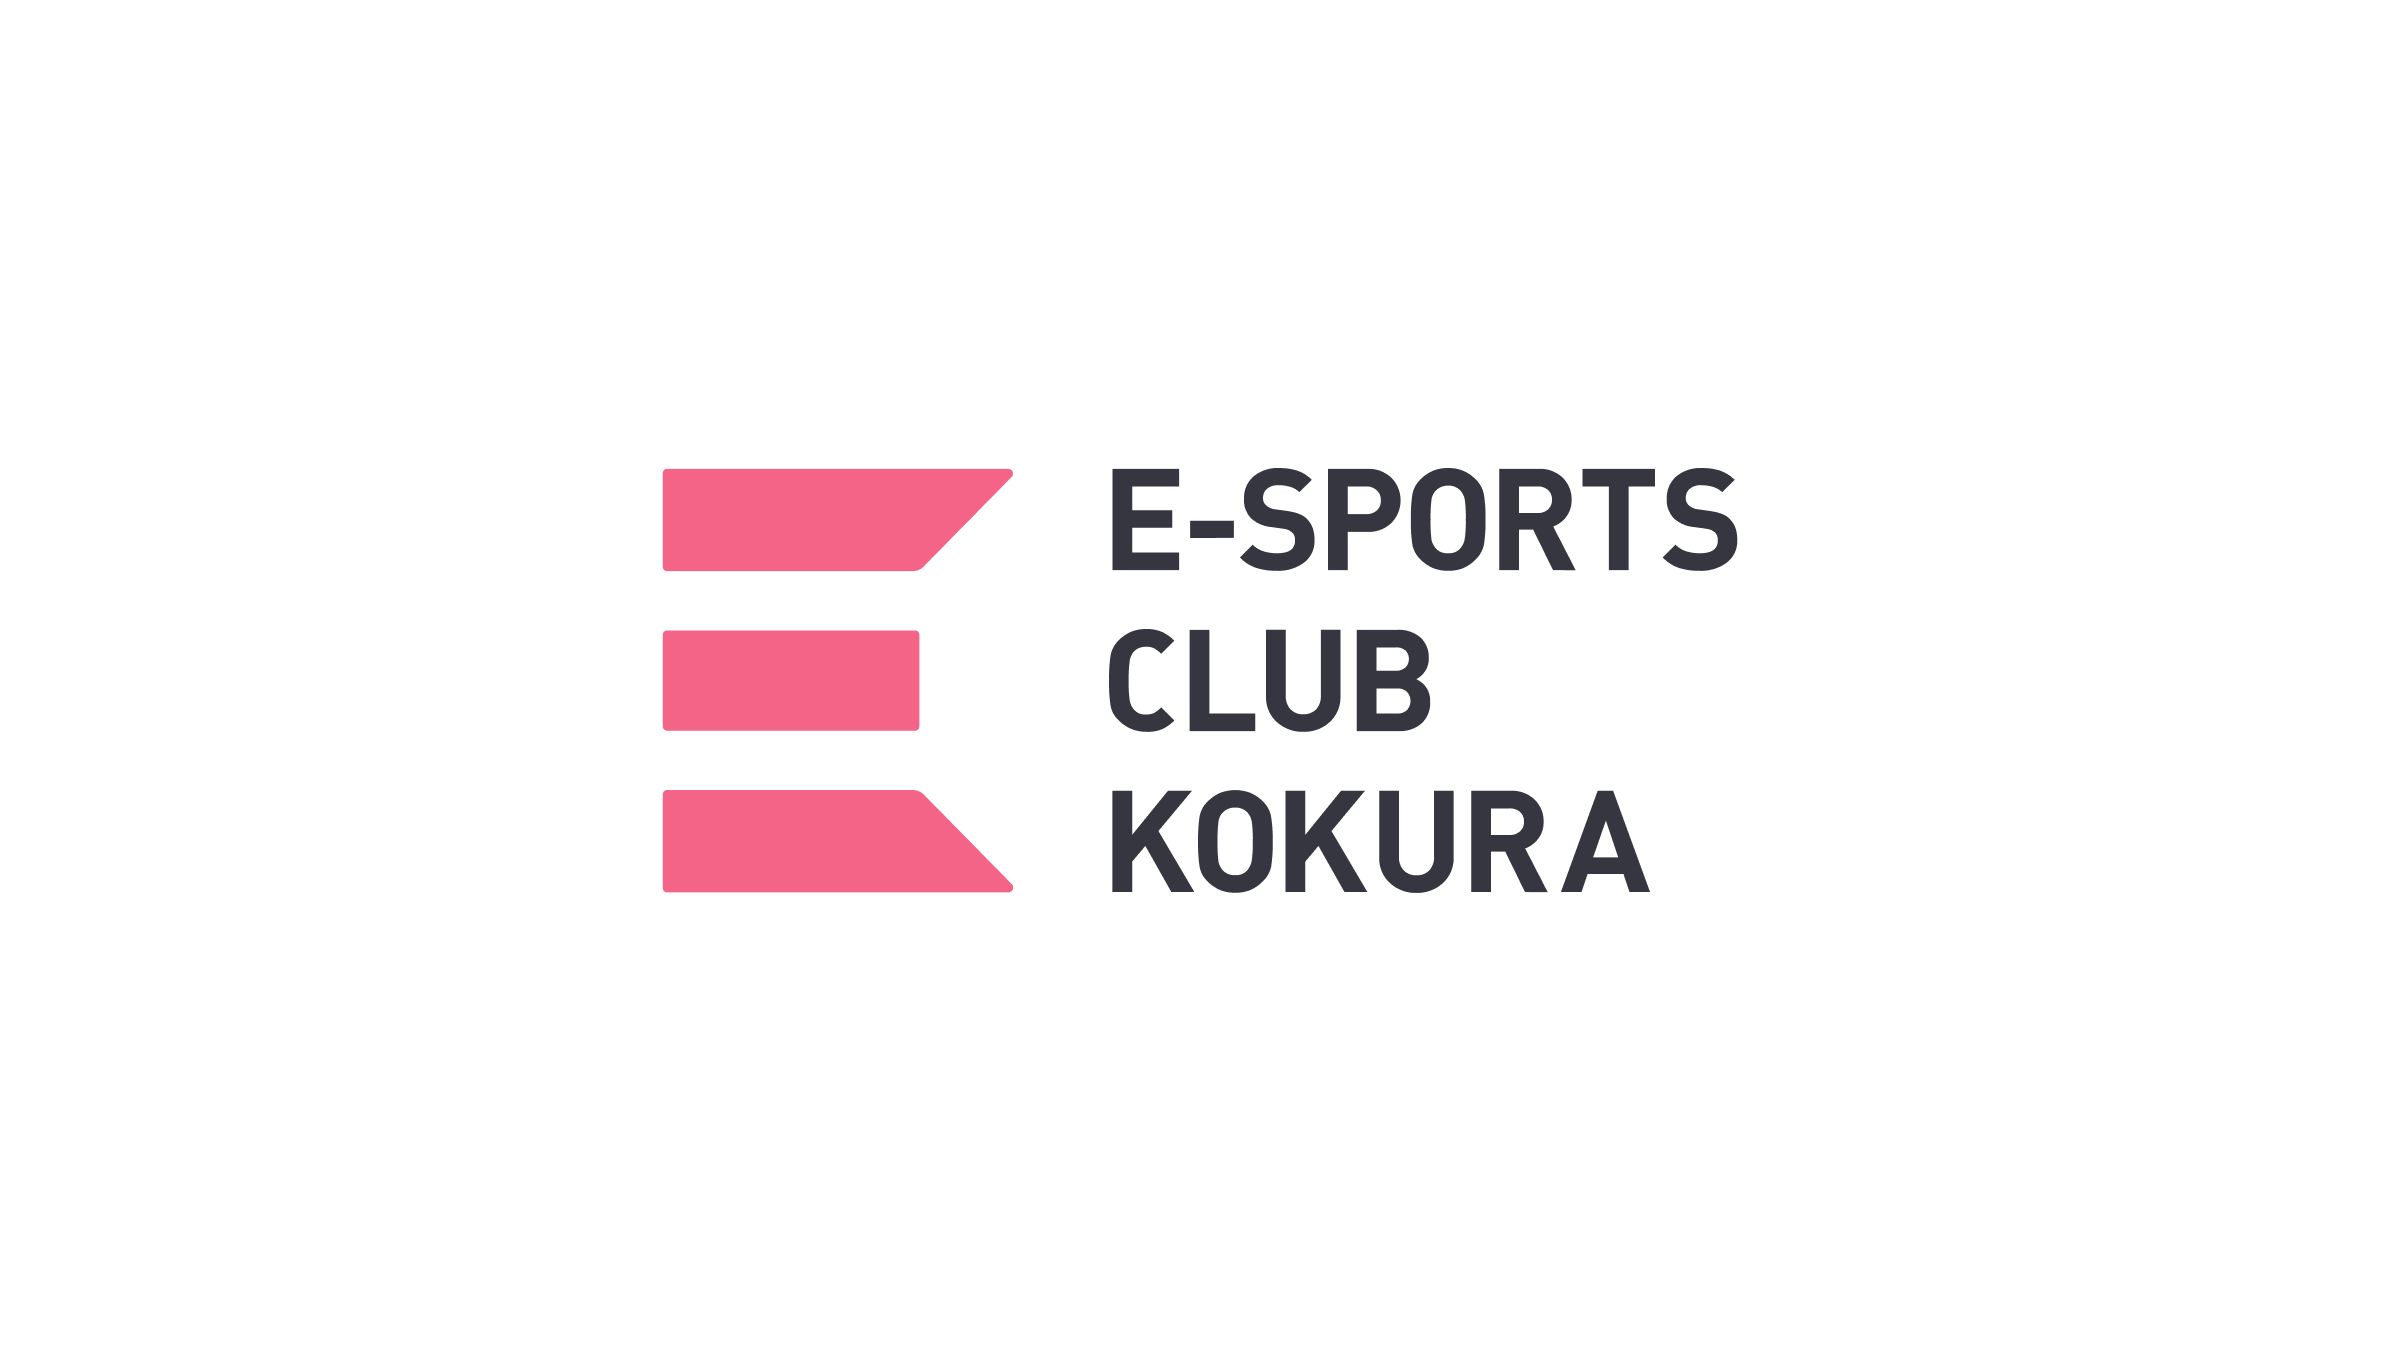 E-SPORTS CLUB KOKURAのウェブサイト